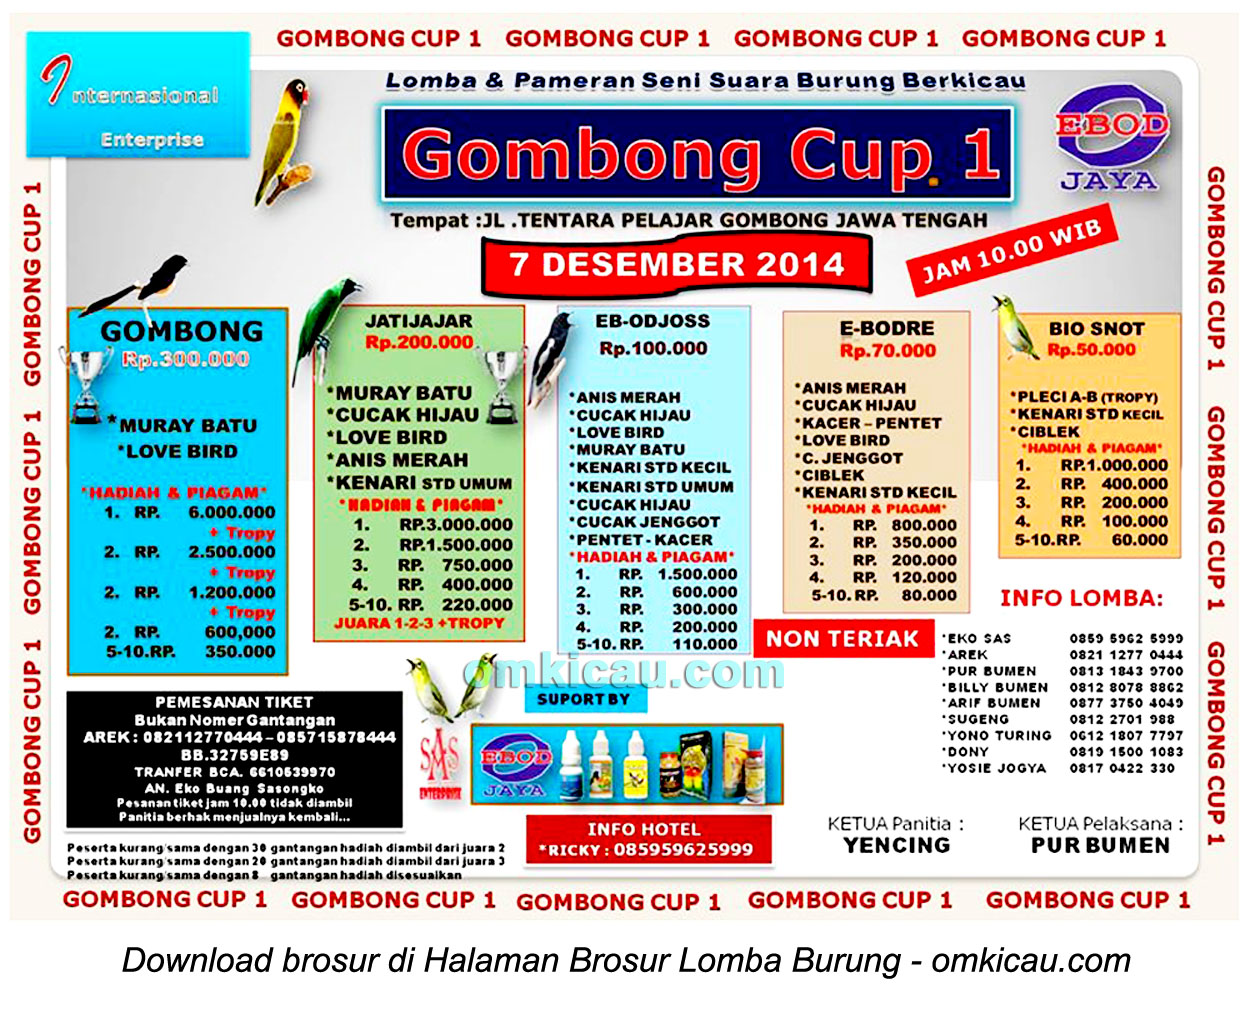 Brosur Lomba Burung Berkicau Gombong Cup 1, Kebumen, 7 Desember 2014